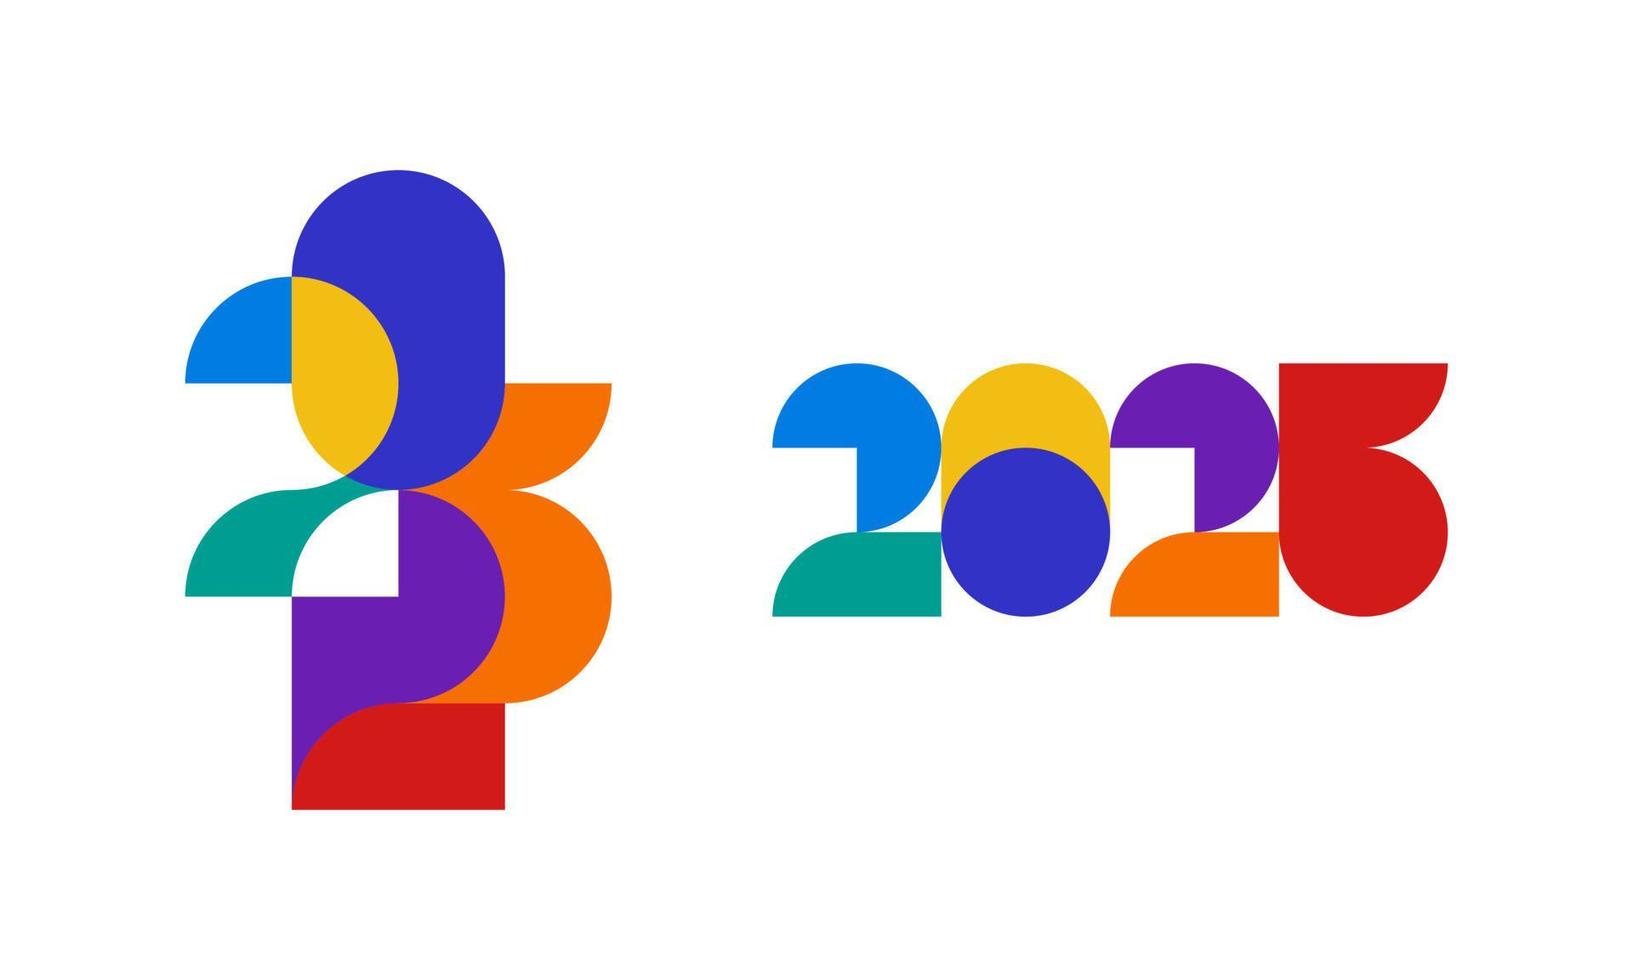 2023 nuovo anno moderno colorato illustrazione con semplice forme per calendario o saluto carta vettore